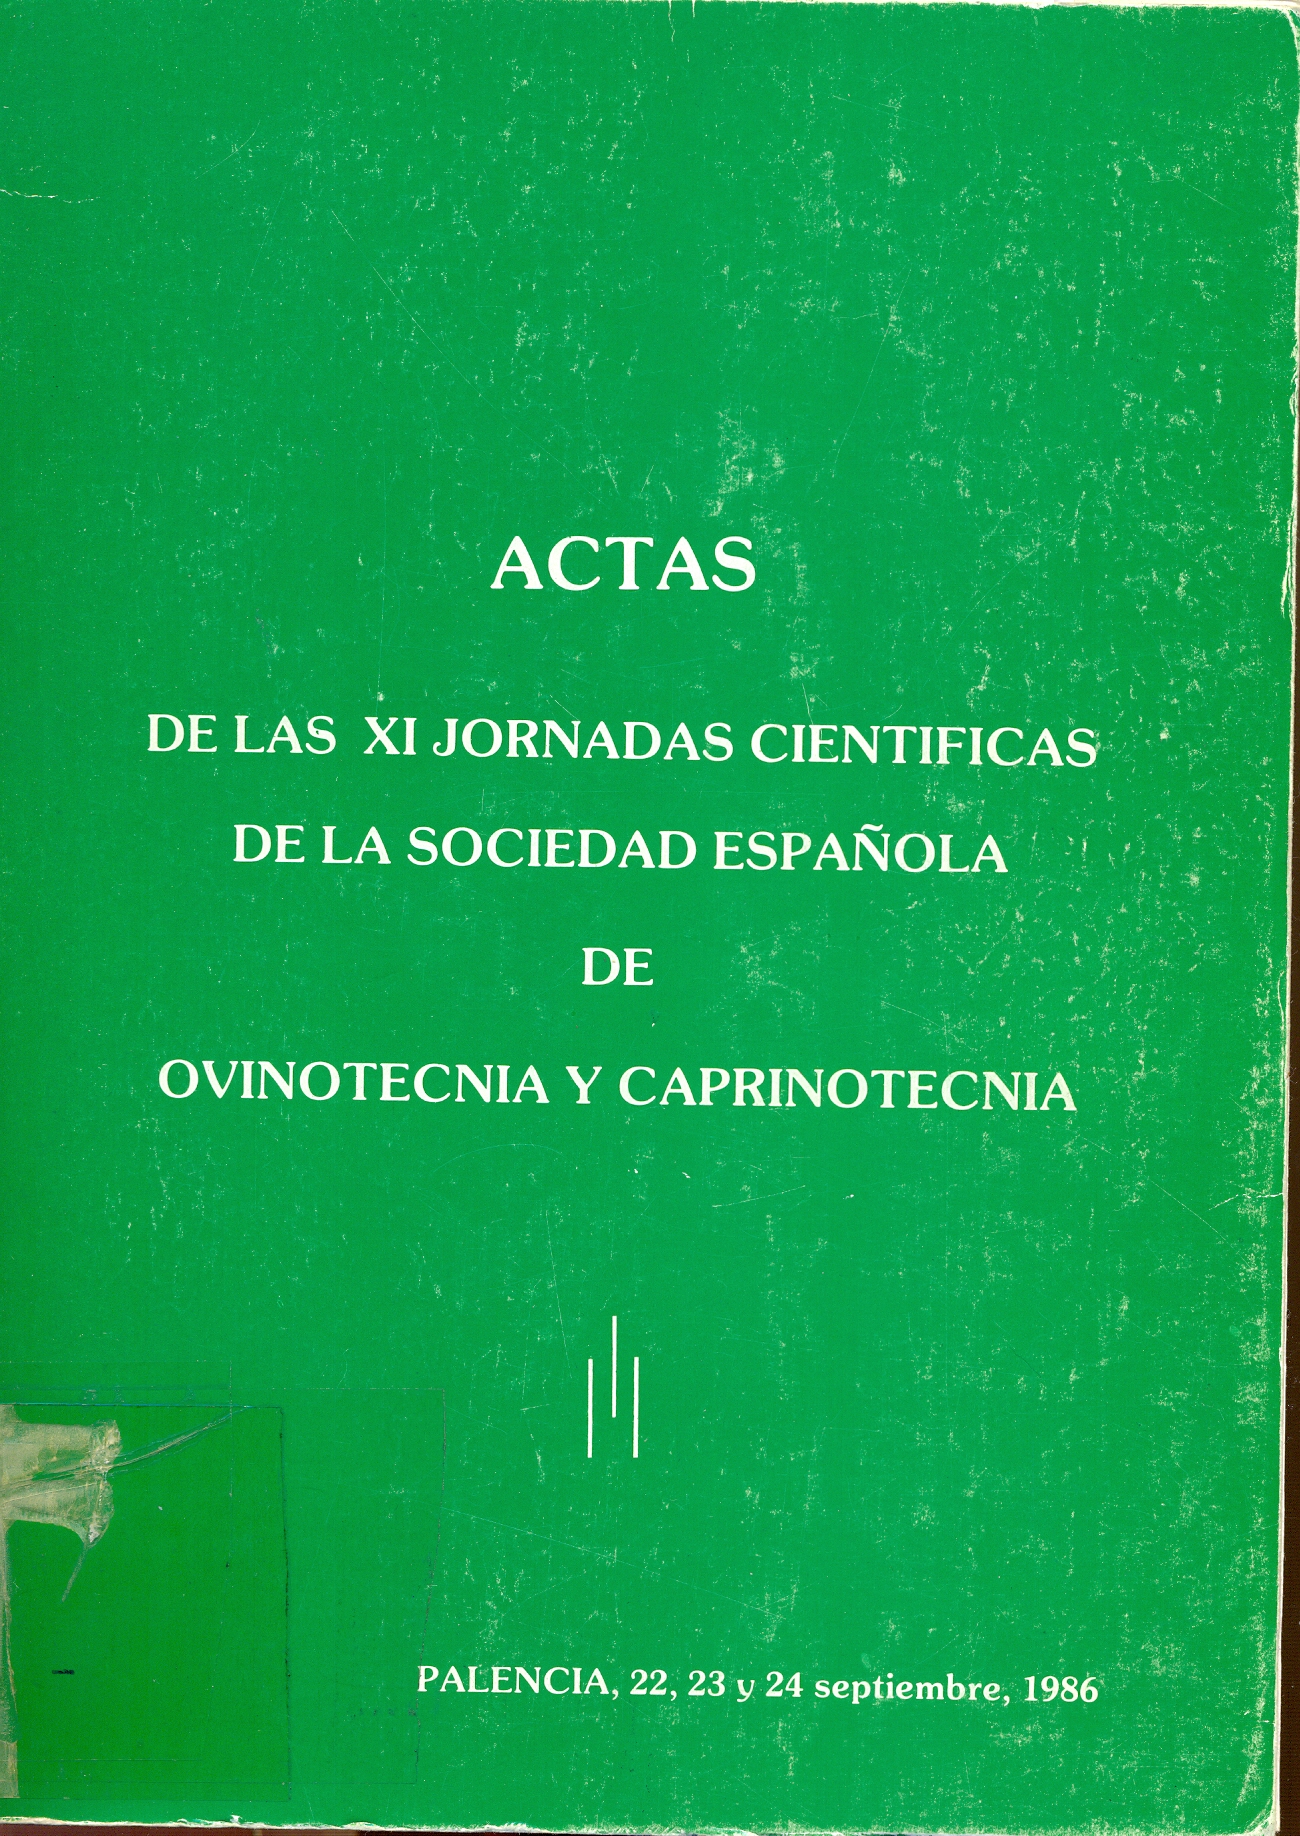 Imagen de portada del libro XI Jornadas Científicas de la Sociedad Española de Ovinotecnia y Caprinotecnia